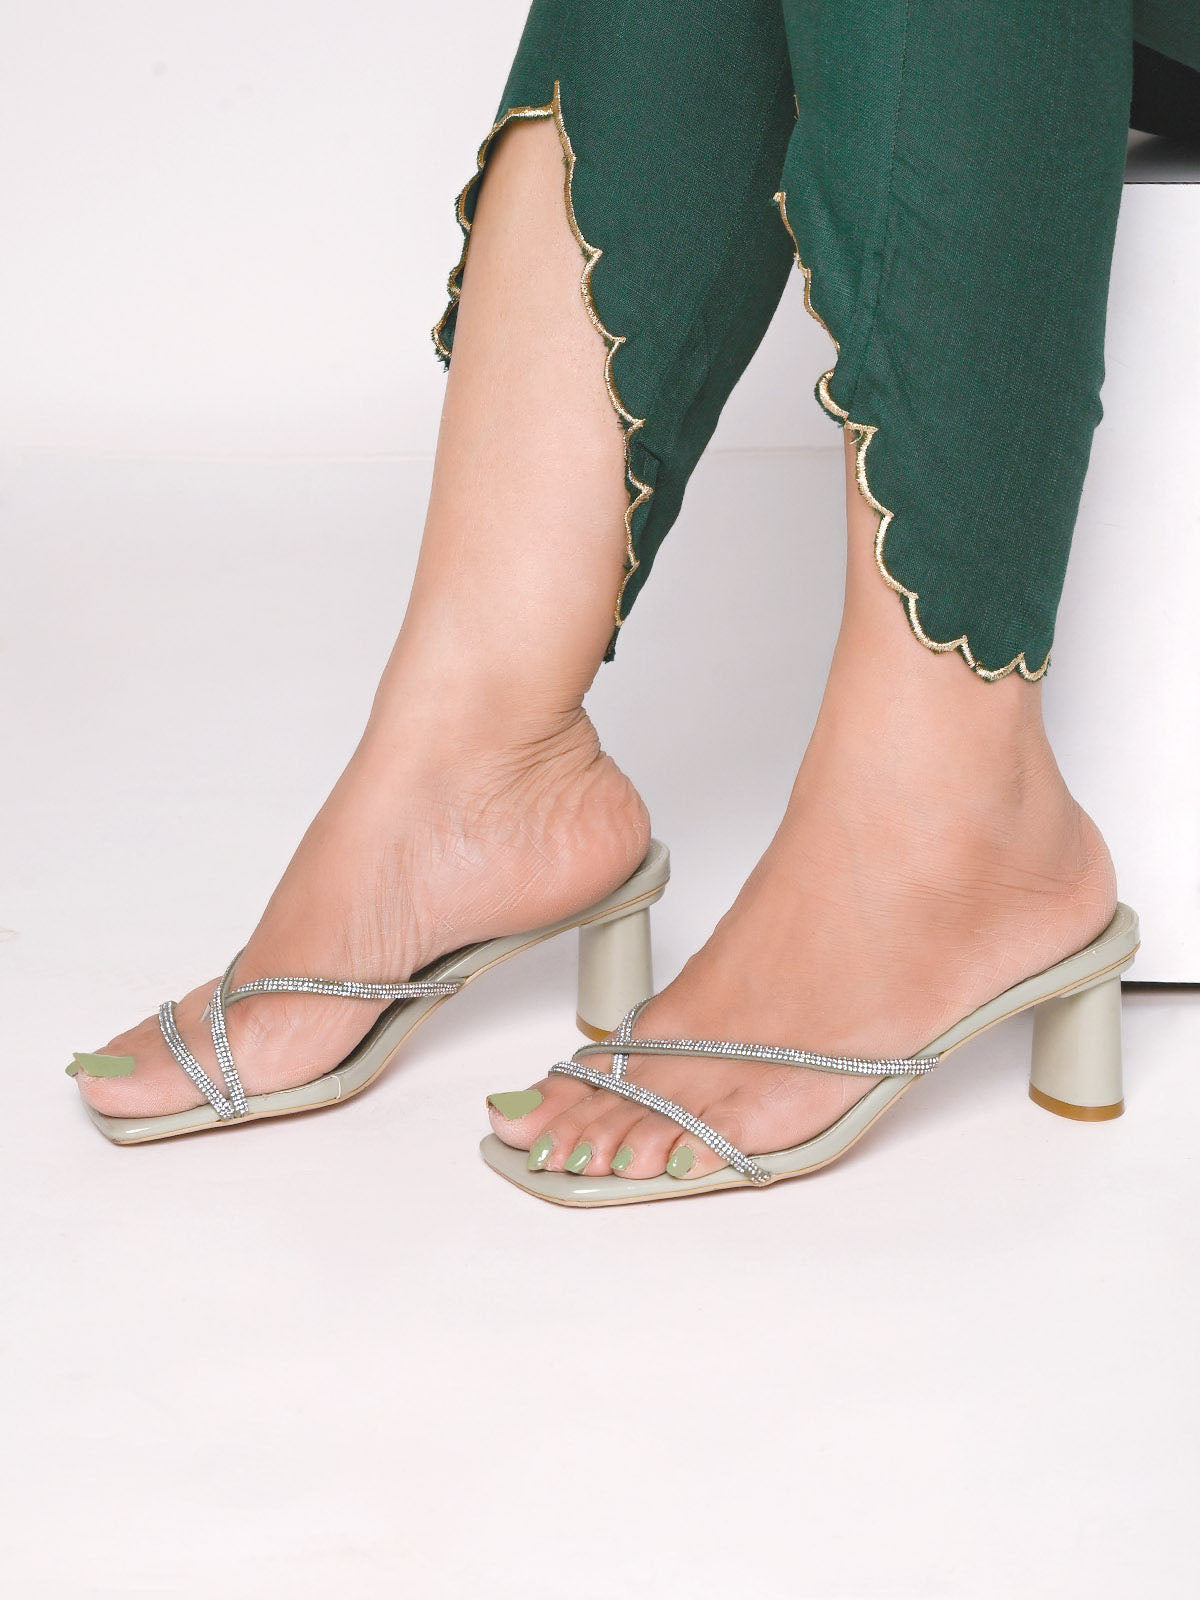 Olive Green Embellished Heels Sandal